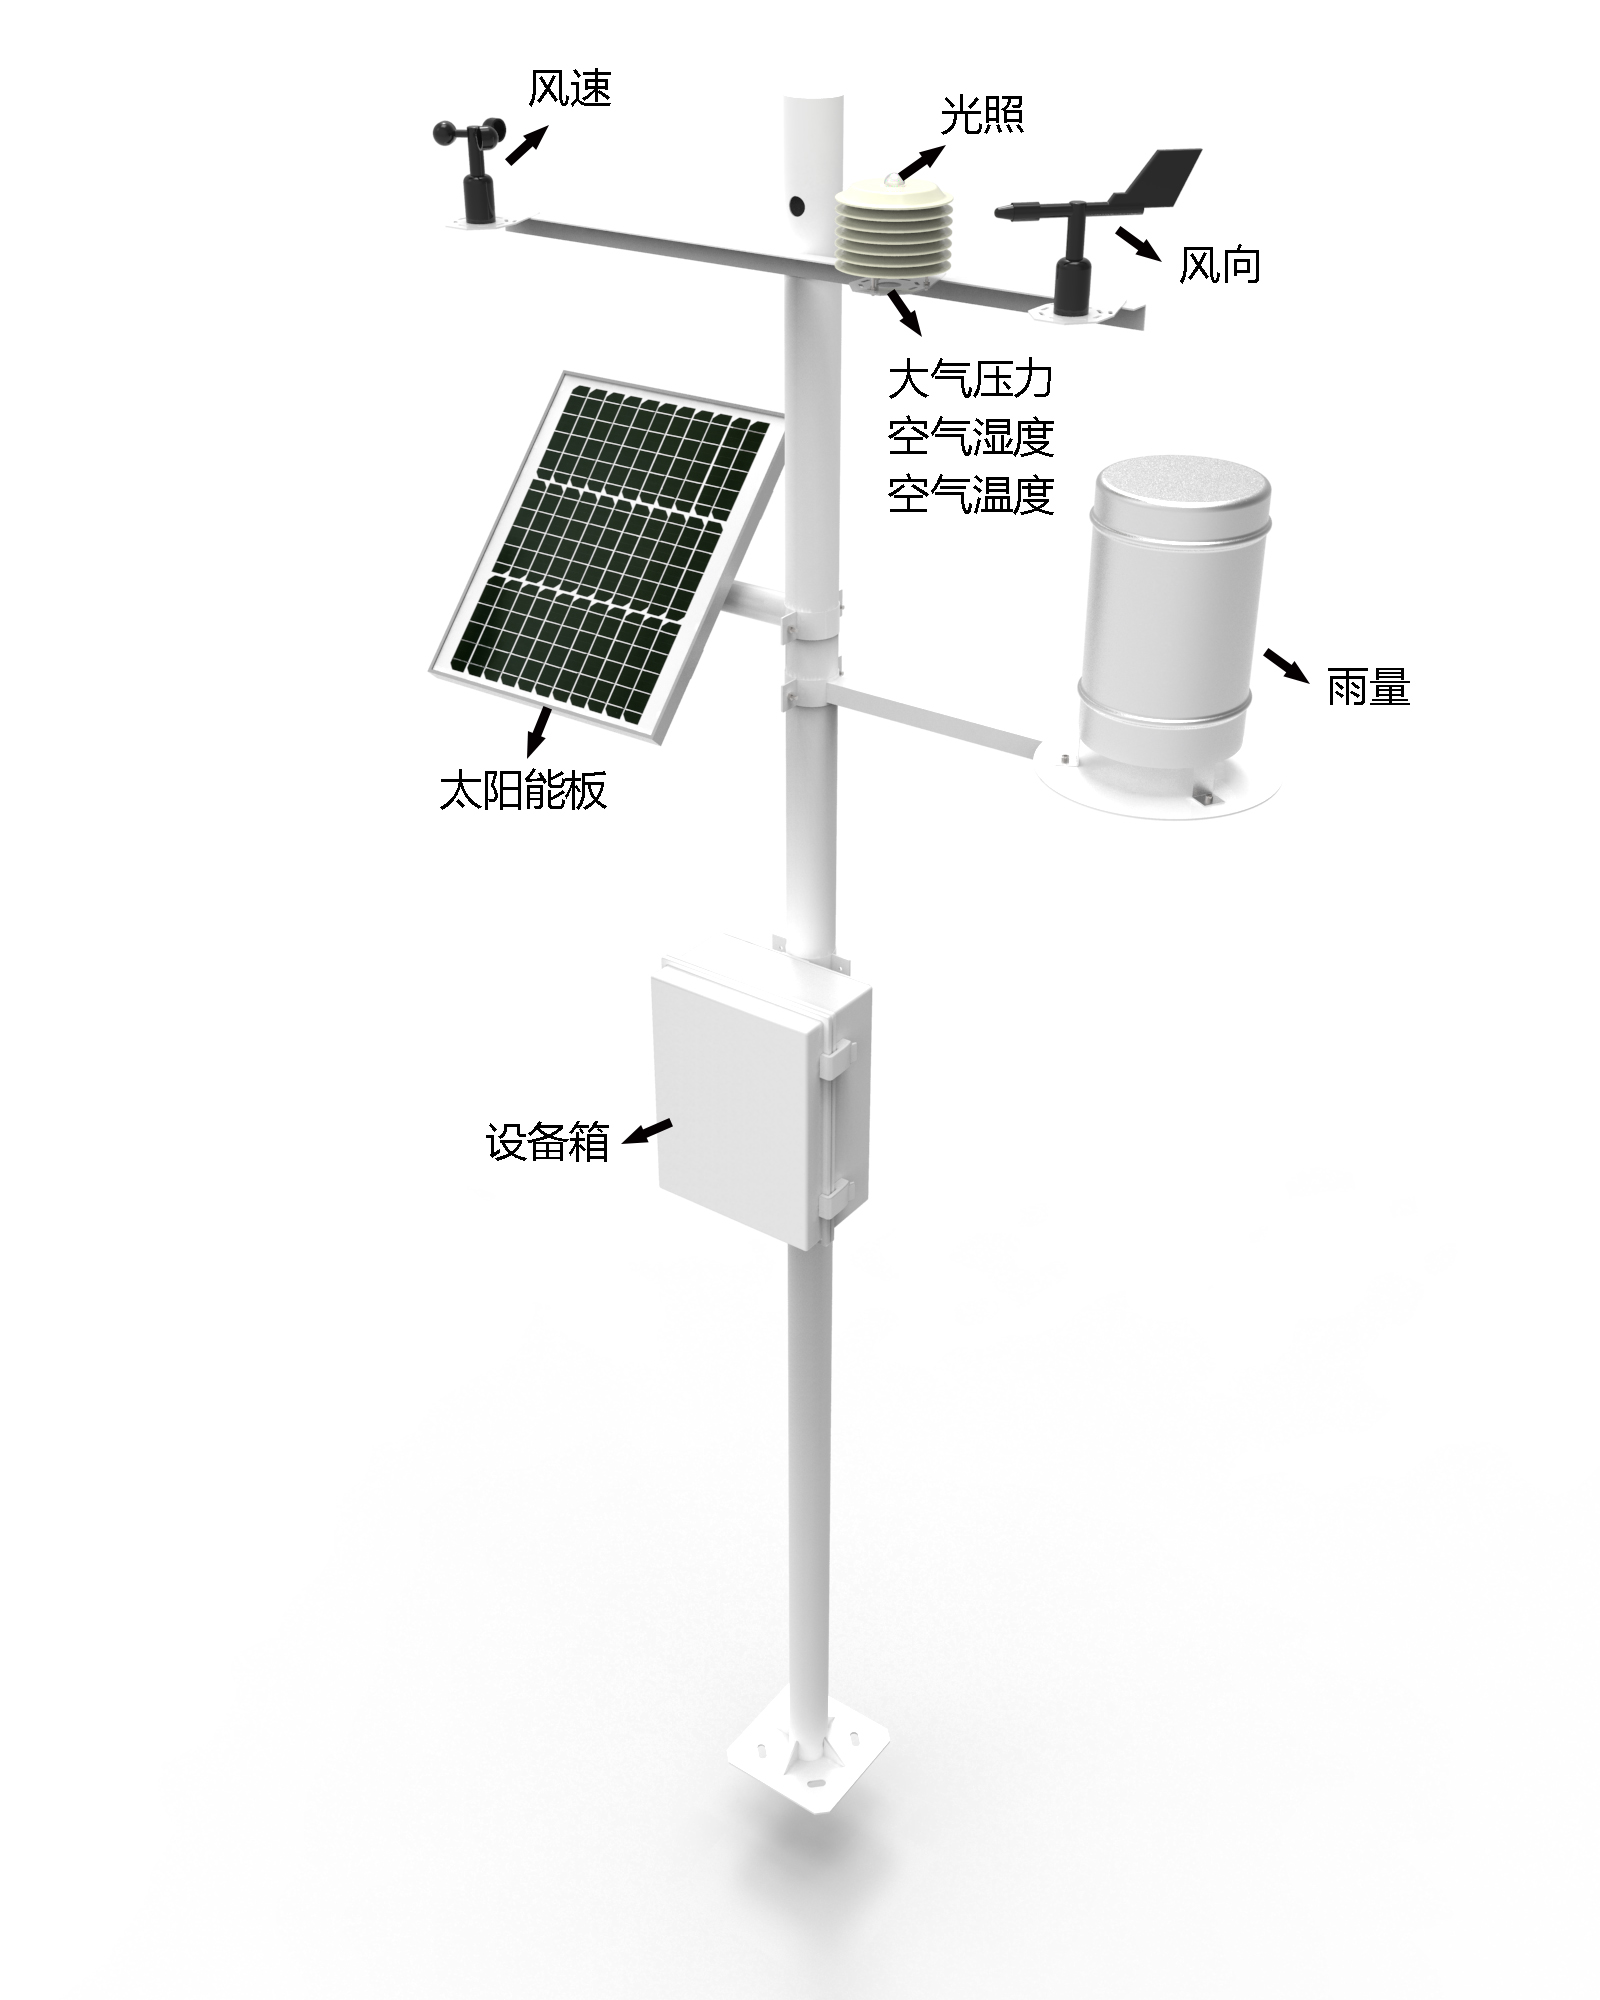 小型农业气象站产品结构图